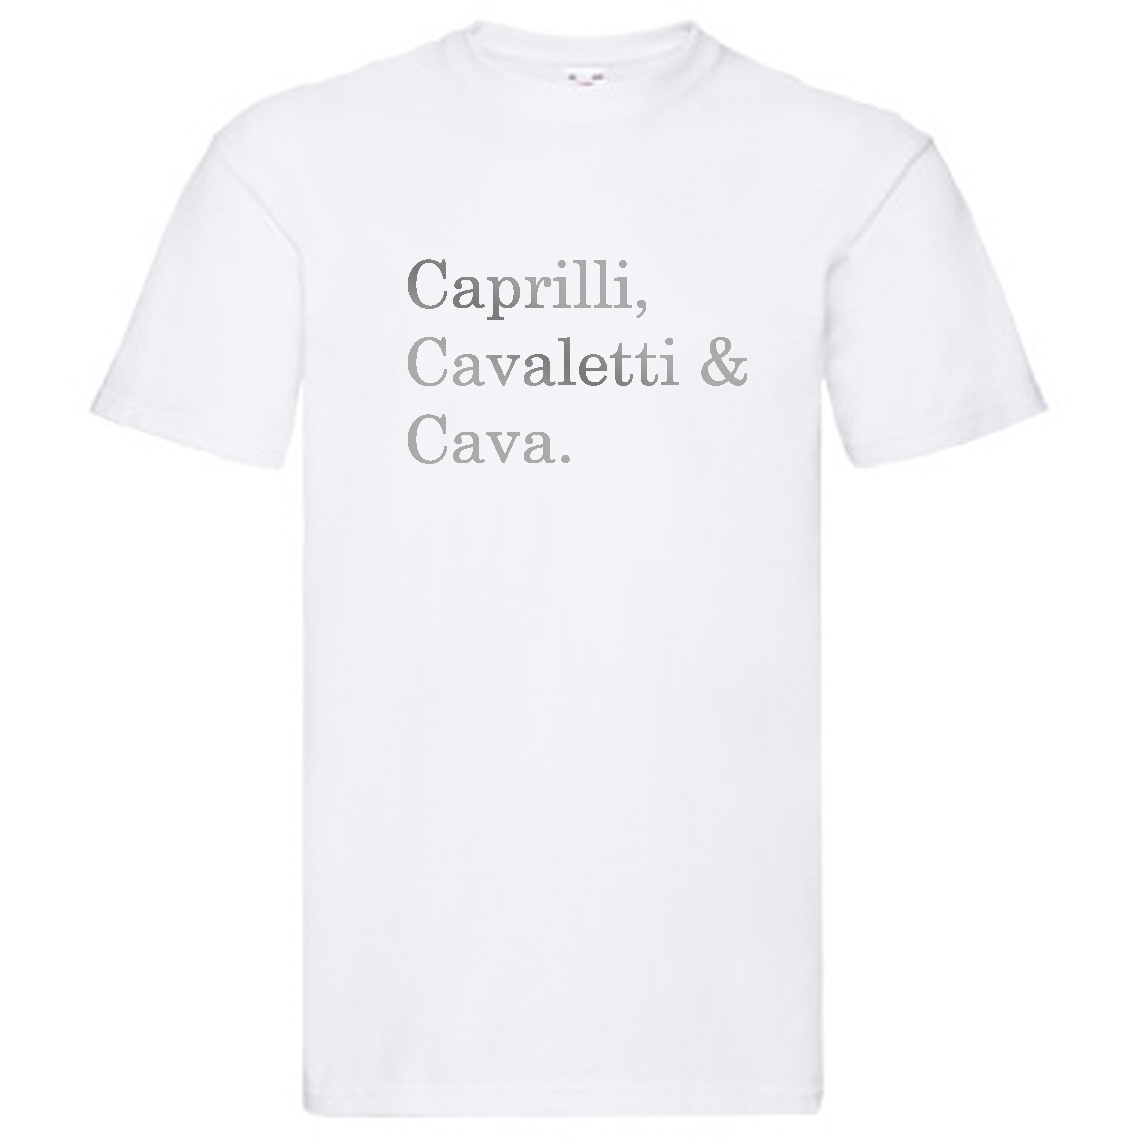 T-Shirt - "Caprilli, Cavaletti & Cava"